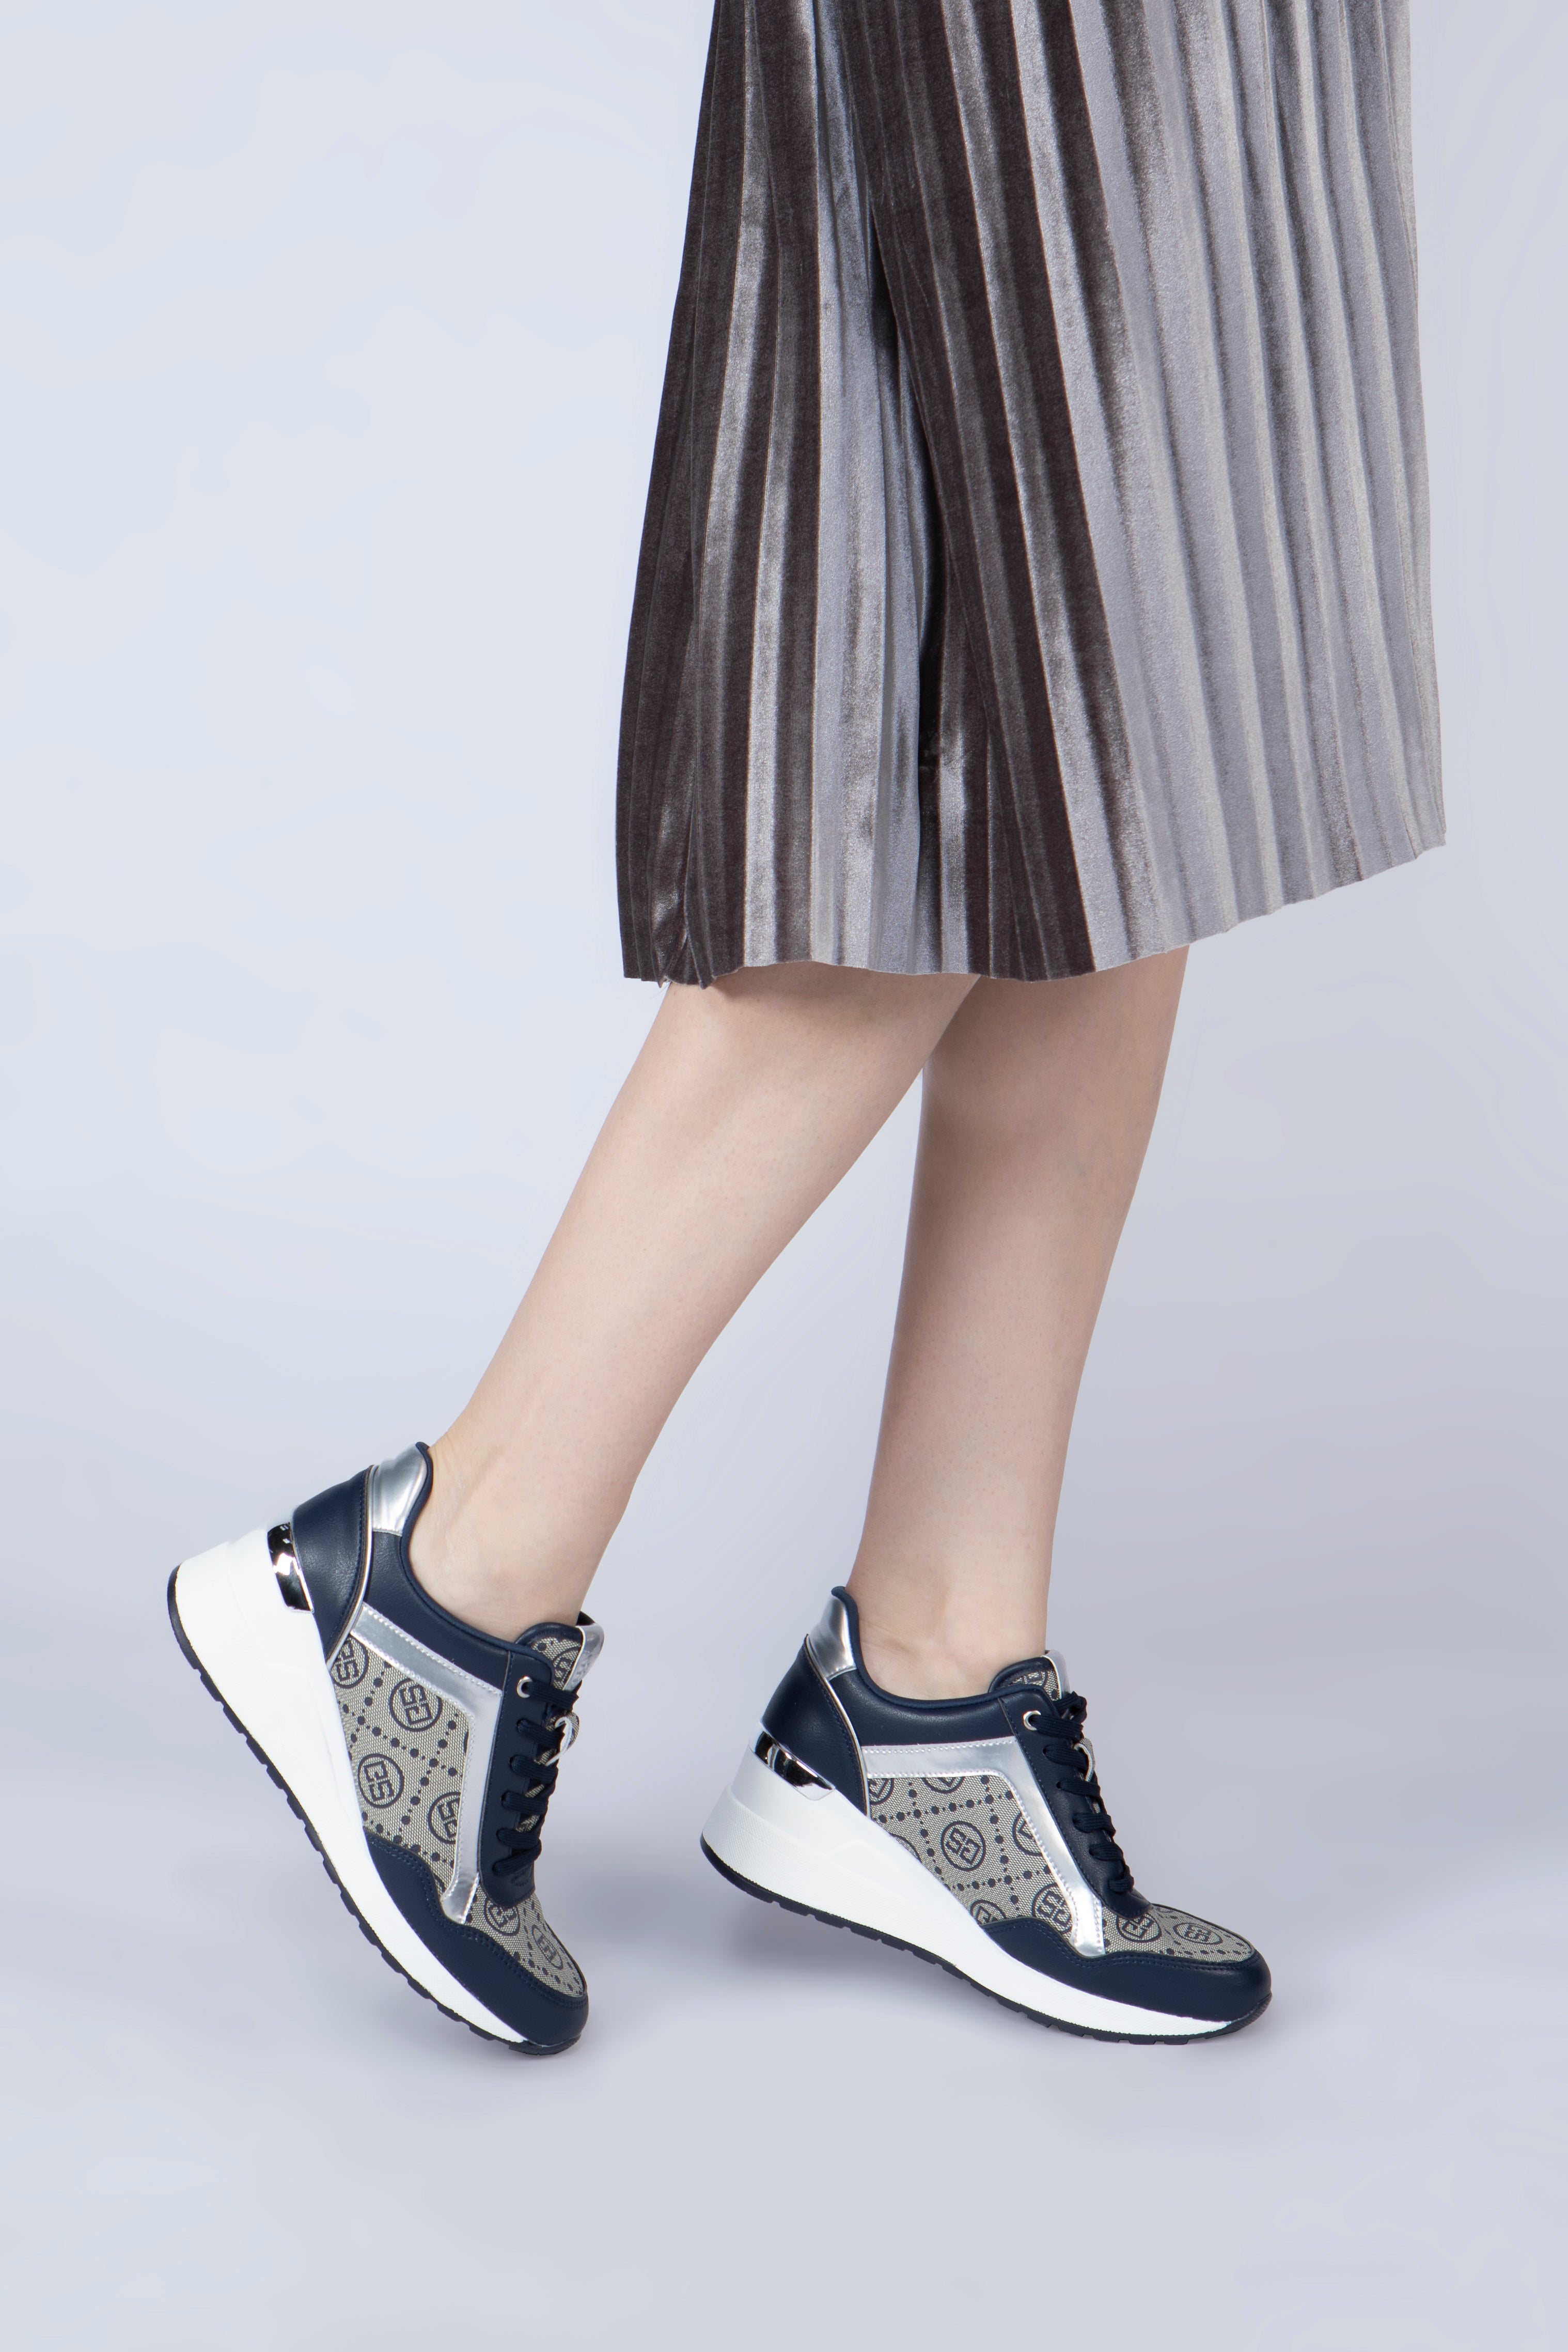 صورة جانبية لقدم شابة ترتدي حذاء ساغا الرياضي النسائي بلون كحلي وفضي